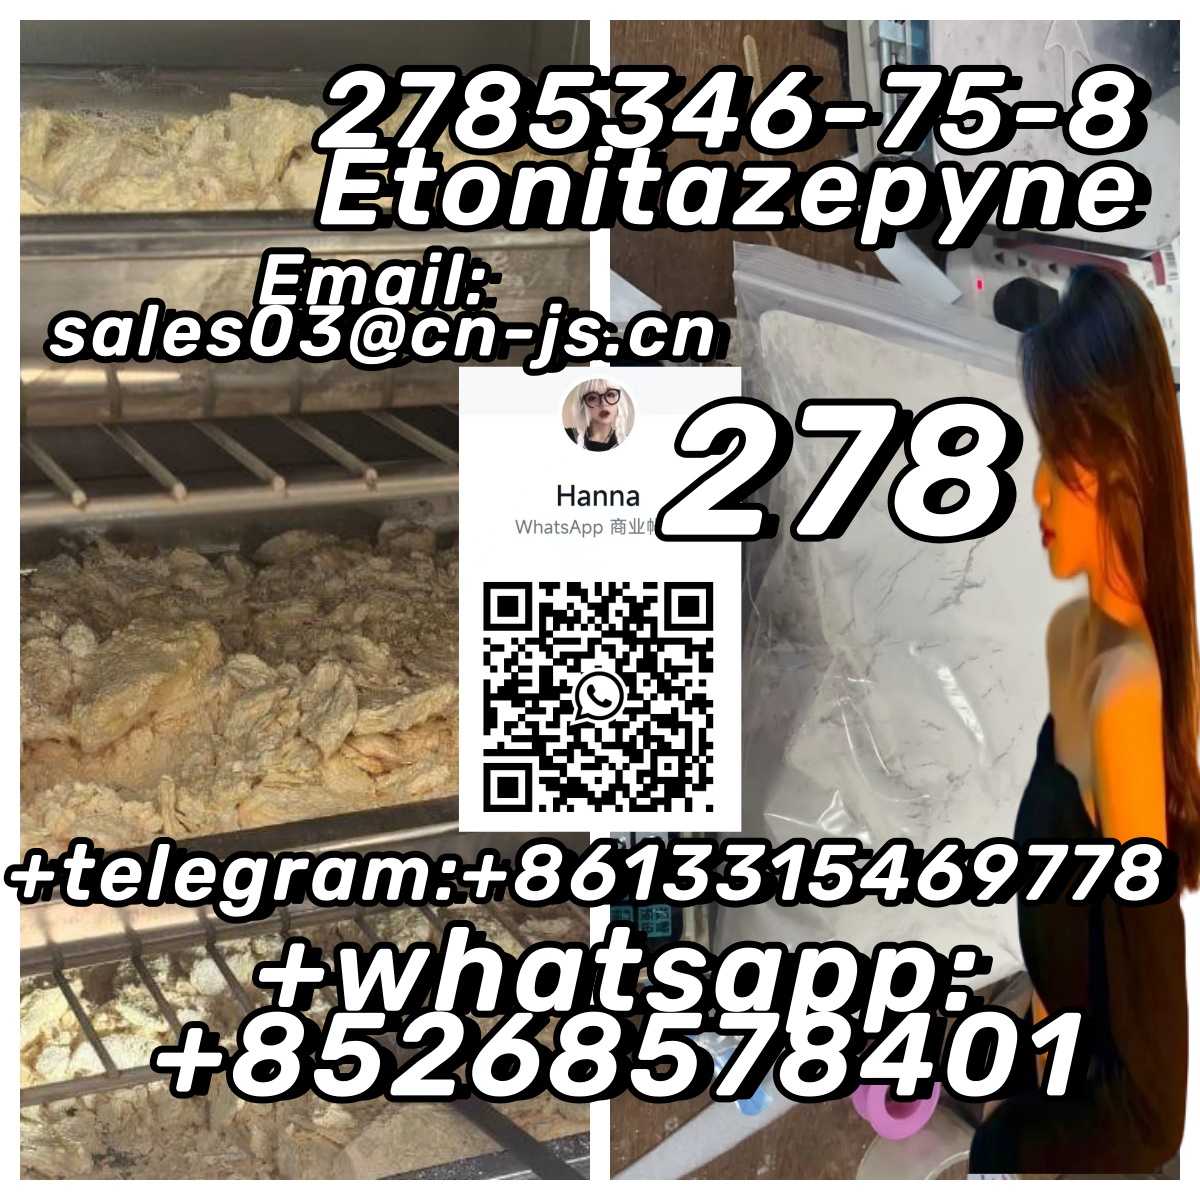 Free sample 2785346-75-8 Etonitazepyne ,11,Cars,Cars